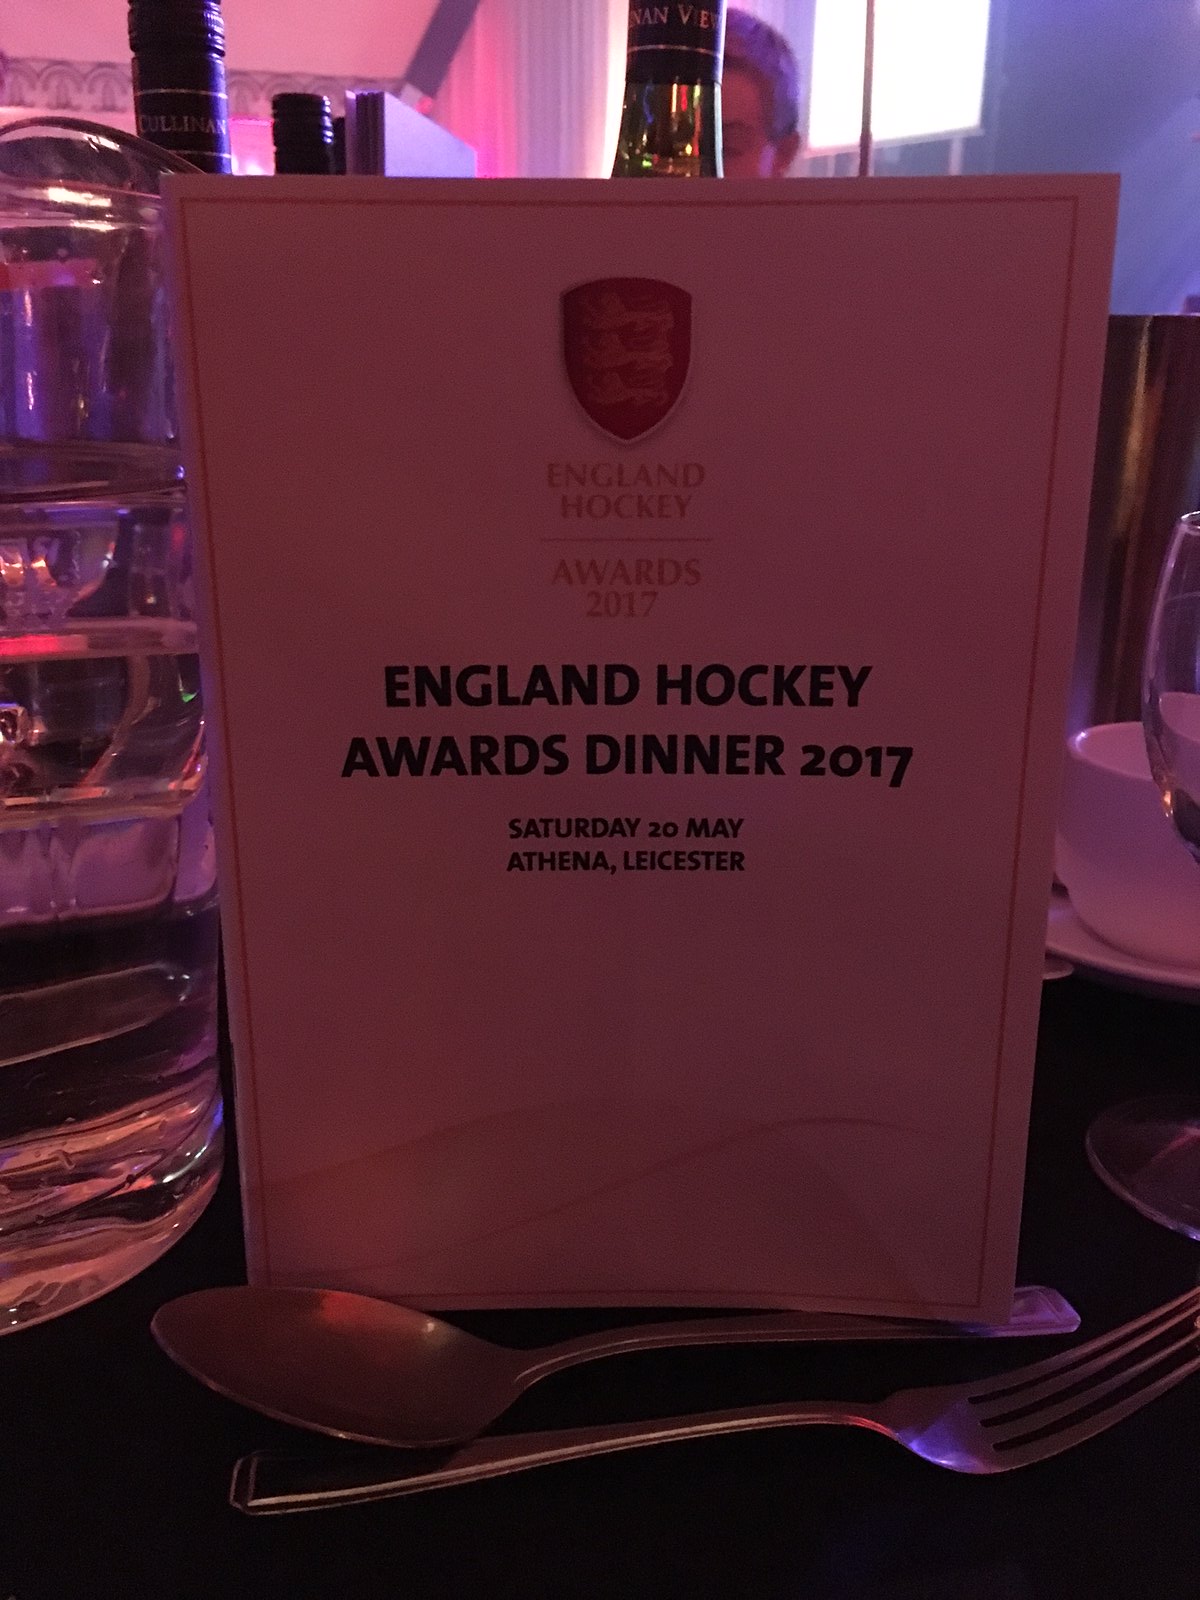 England hockey awards